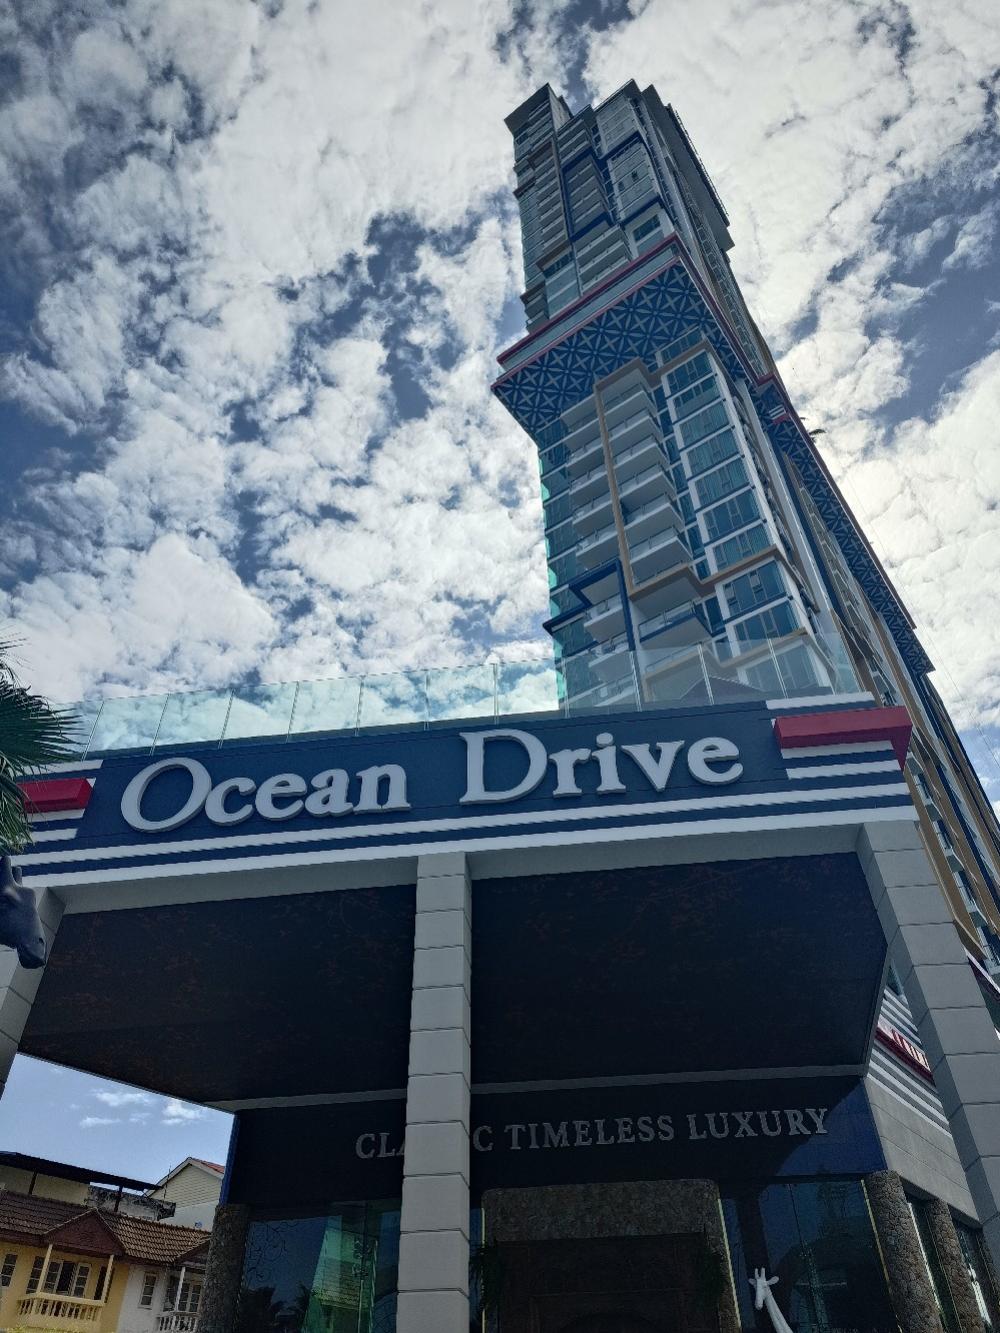 ขายดาวน์คอนโดพัทยา บางแสน ชลบุรี สัตหีบ : ขายด่วน ขายดาวน์ ริเวียร่า โอเชี่ยนไดร์ฟ พัทยาRiviera Ocean driveชั้น24 เจ้าของขายเอง คอนโดพร้อมโอน